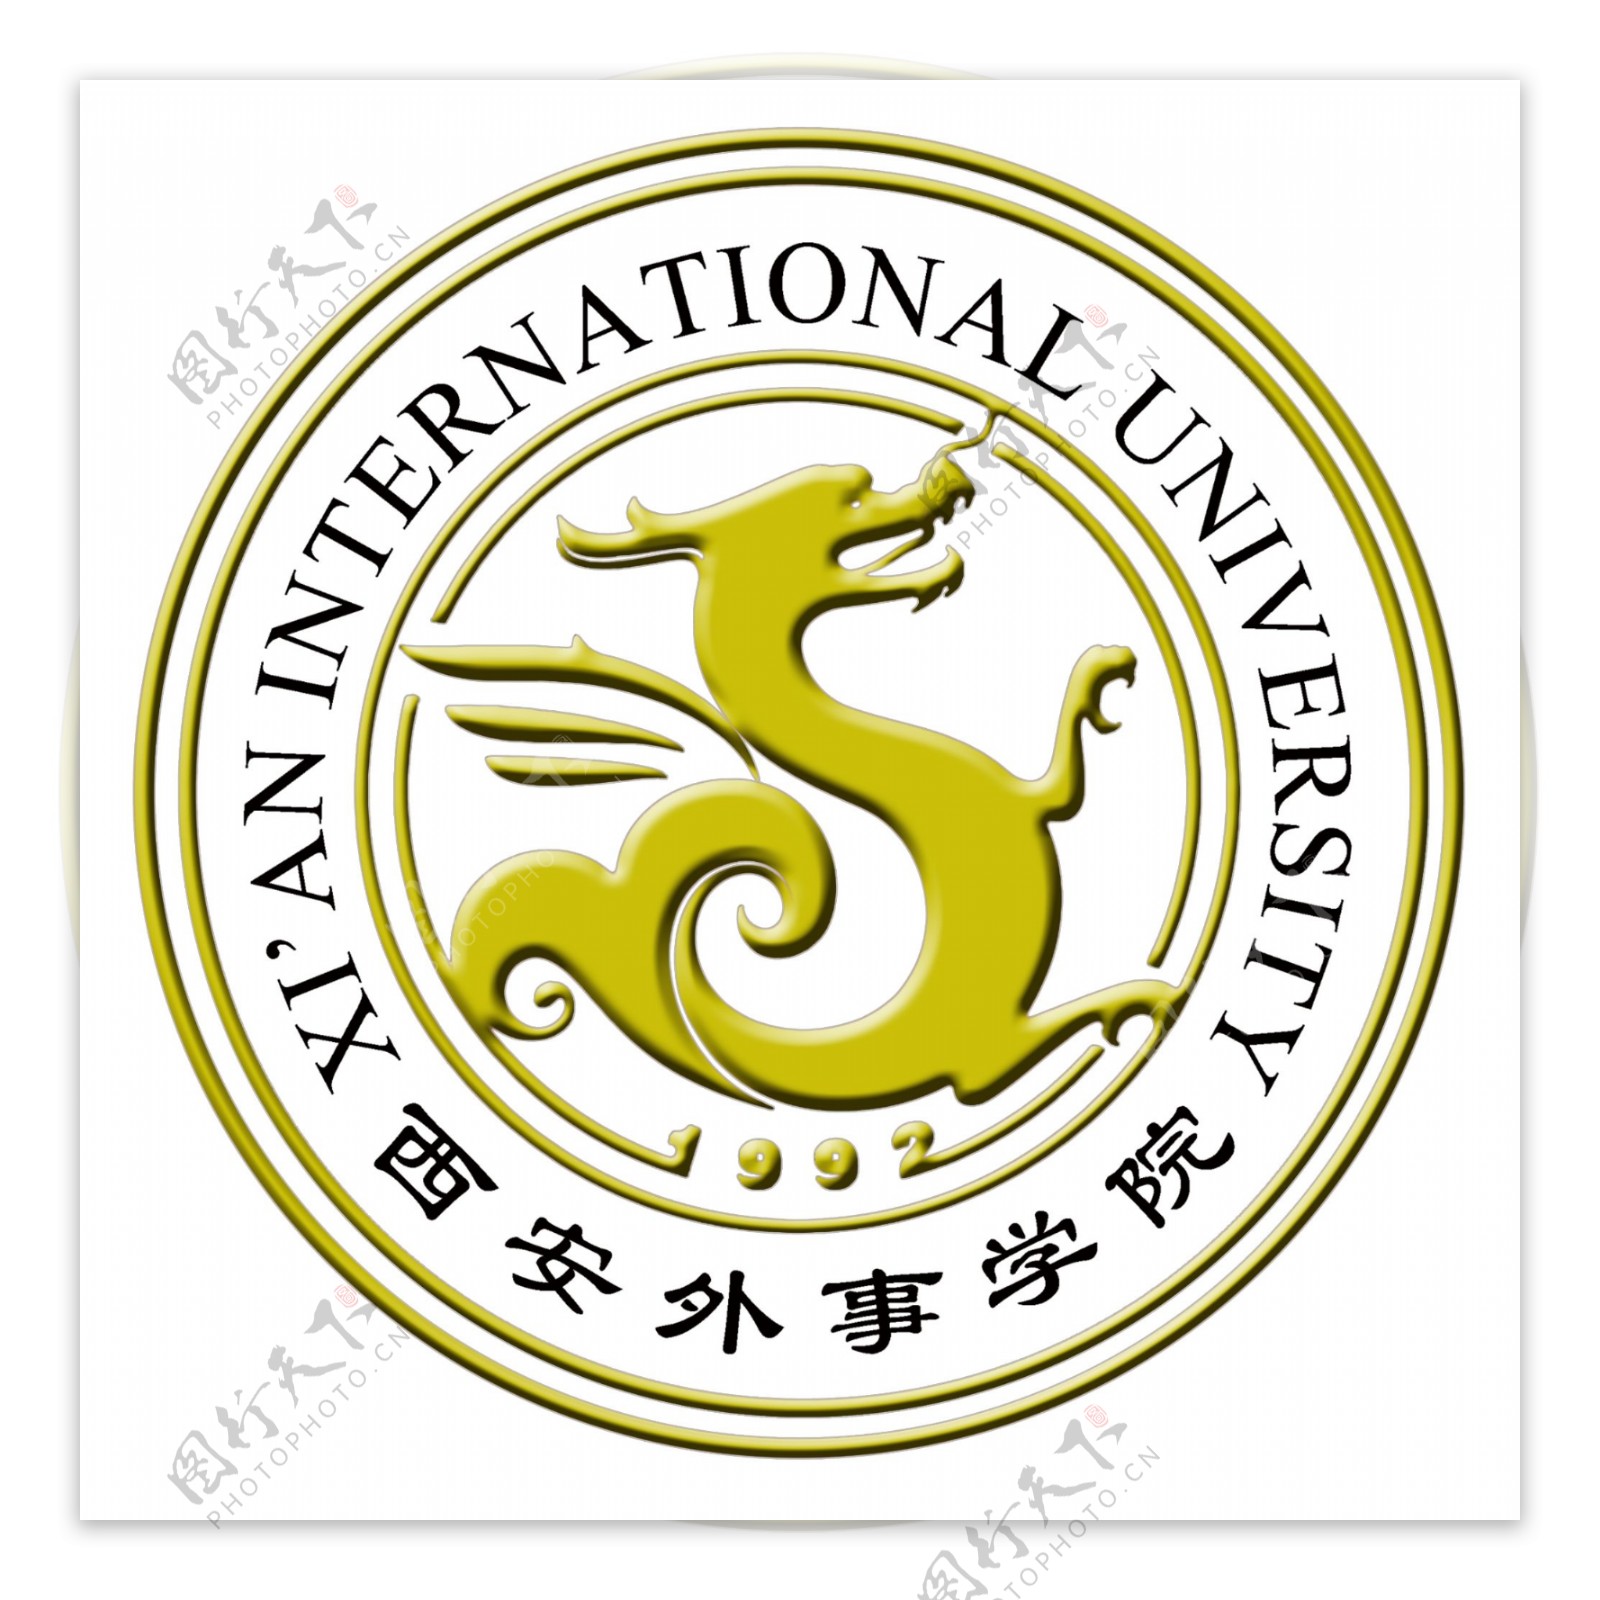 西安外事学院logo